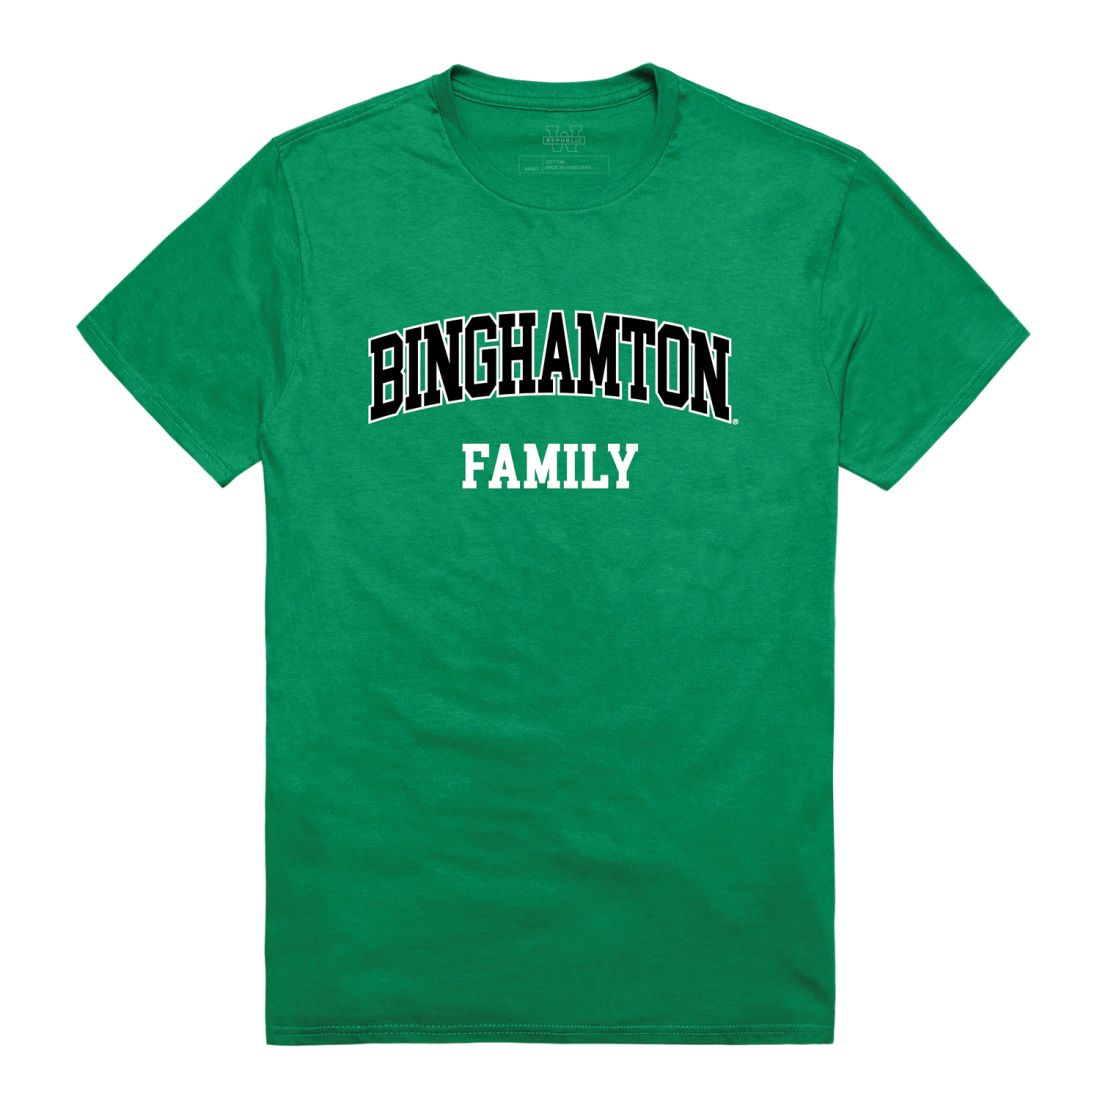 SUNY Binghamton University Bearcats Family T-Shirt